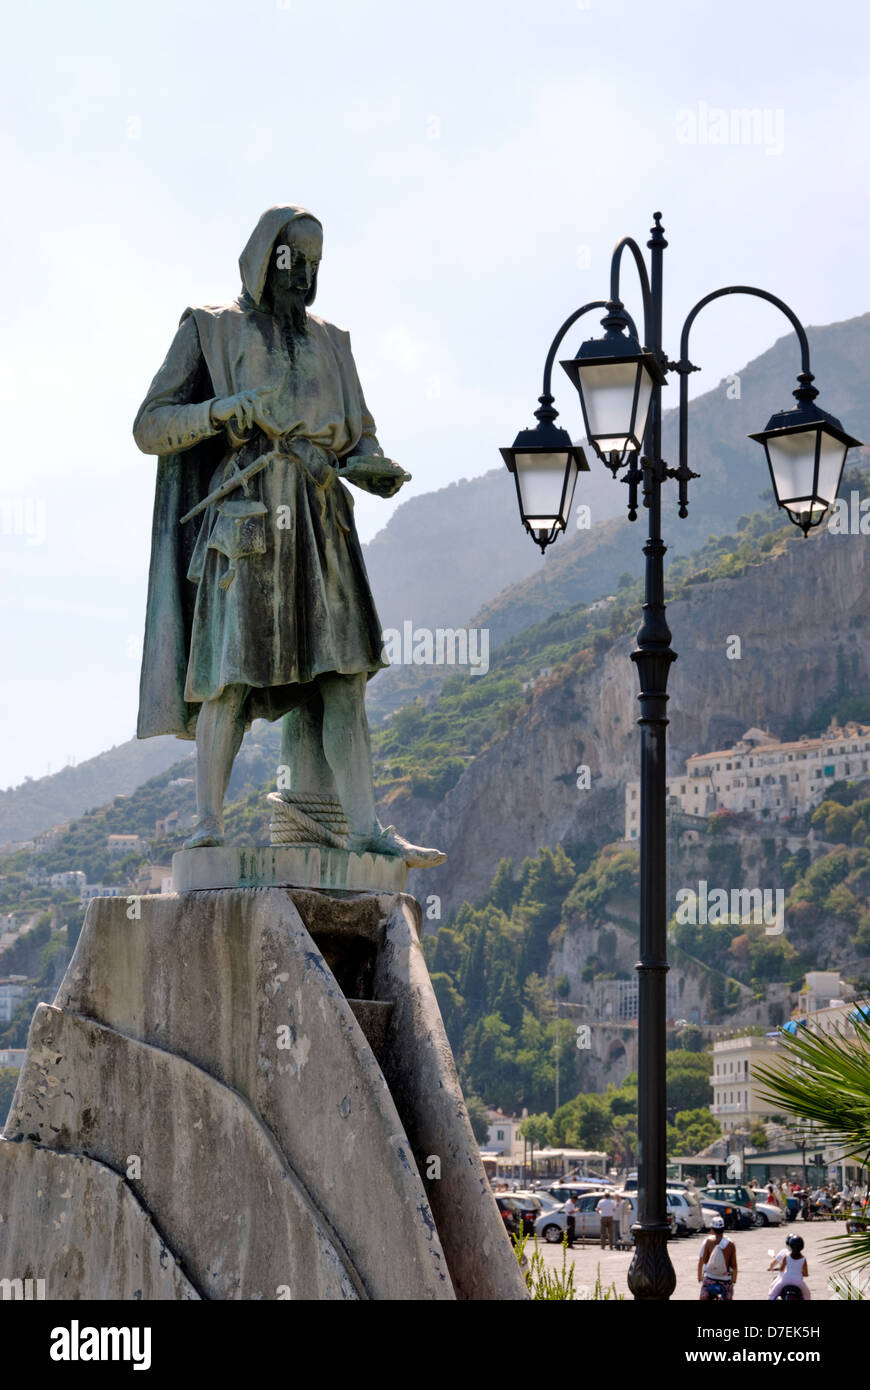 Amalfi. La Campania. Italia. Vista del estatuto de Flavio Gioia, en la Piazza Flavio Gioia en la ciudad de Amalfi. Un comerciante naviga Foto de stock